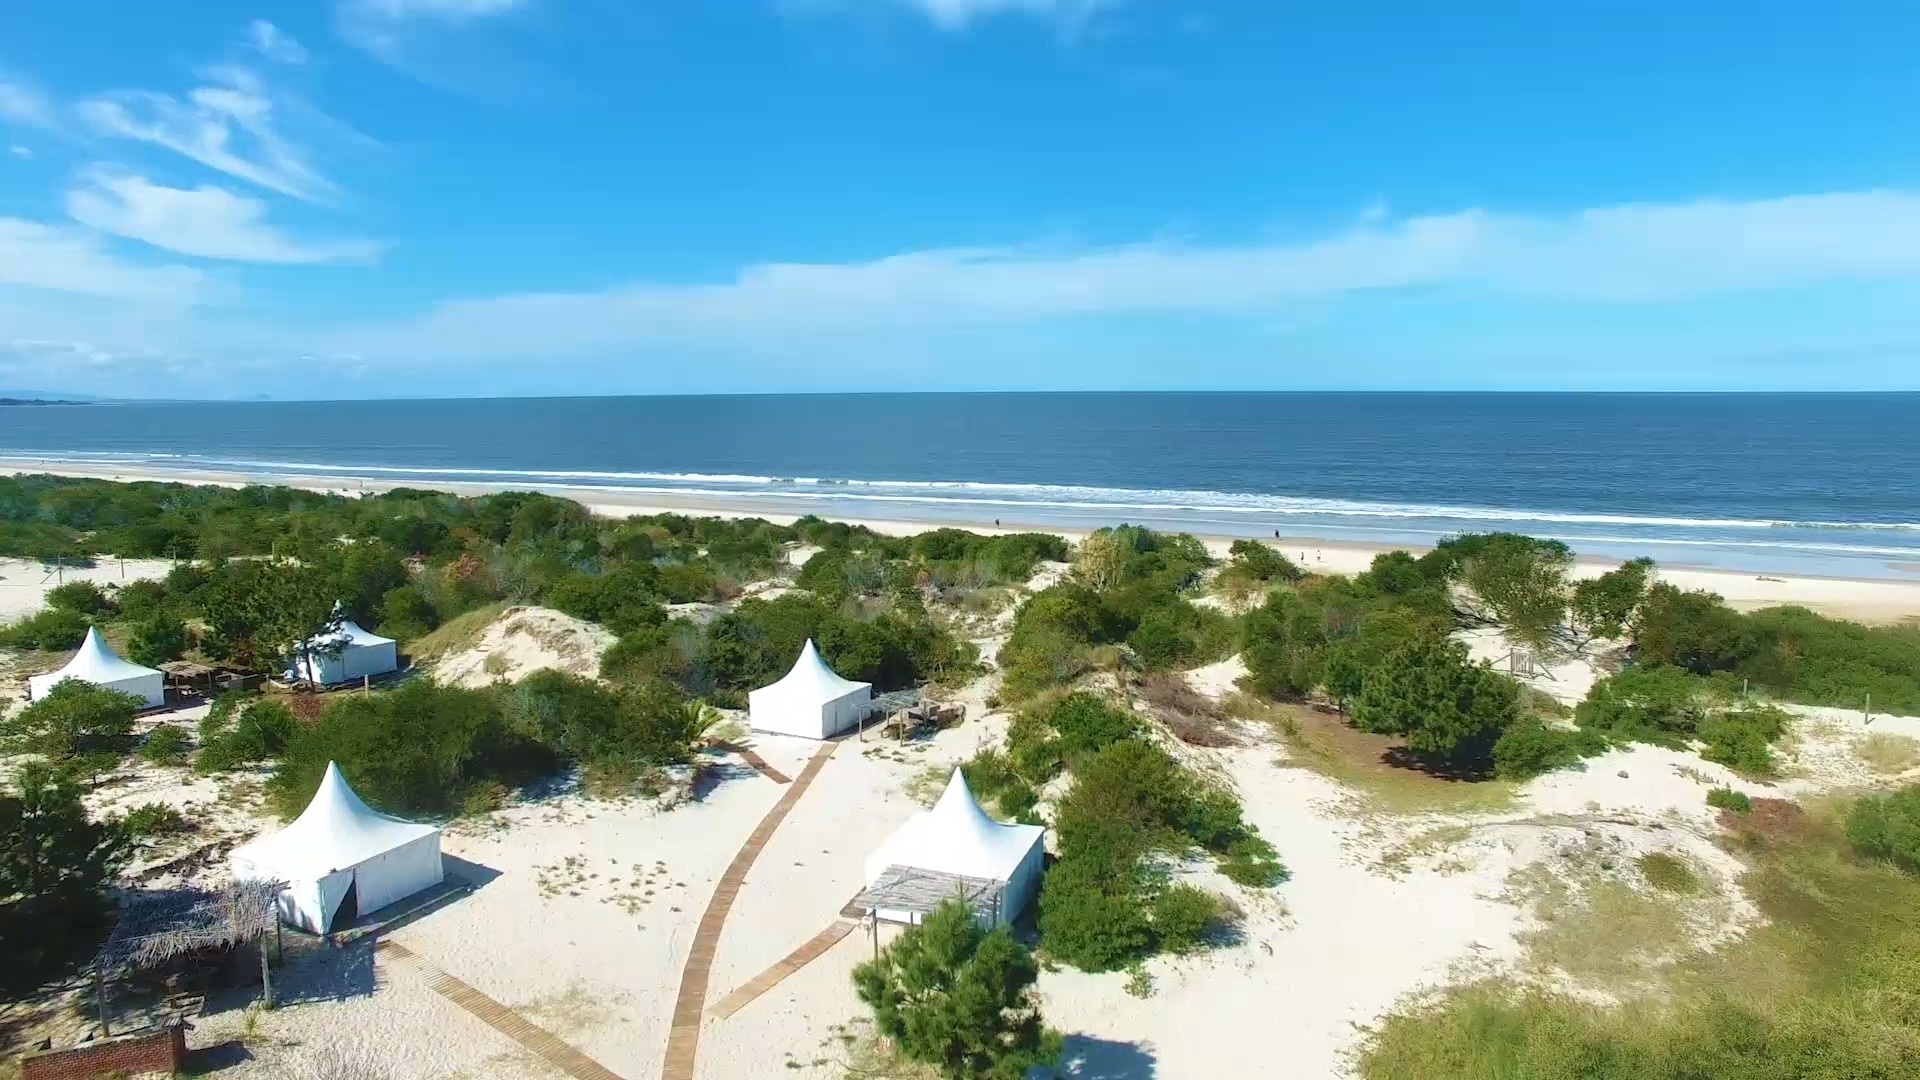 Vista Glamping Playa Escondida y la playa desde un drone